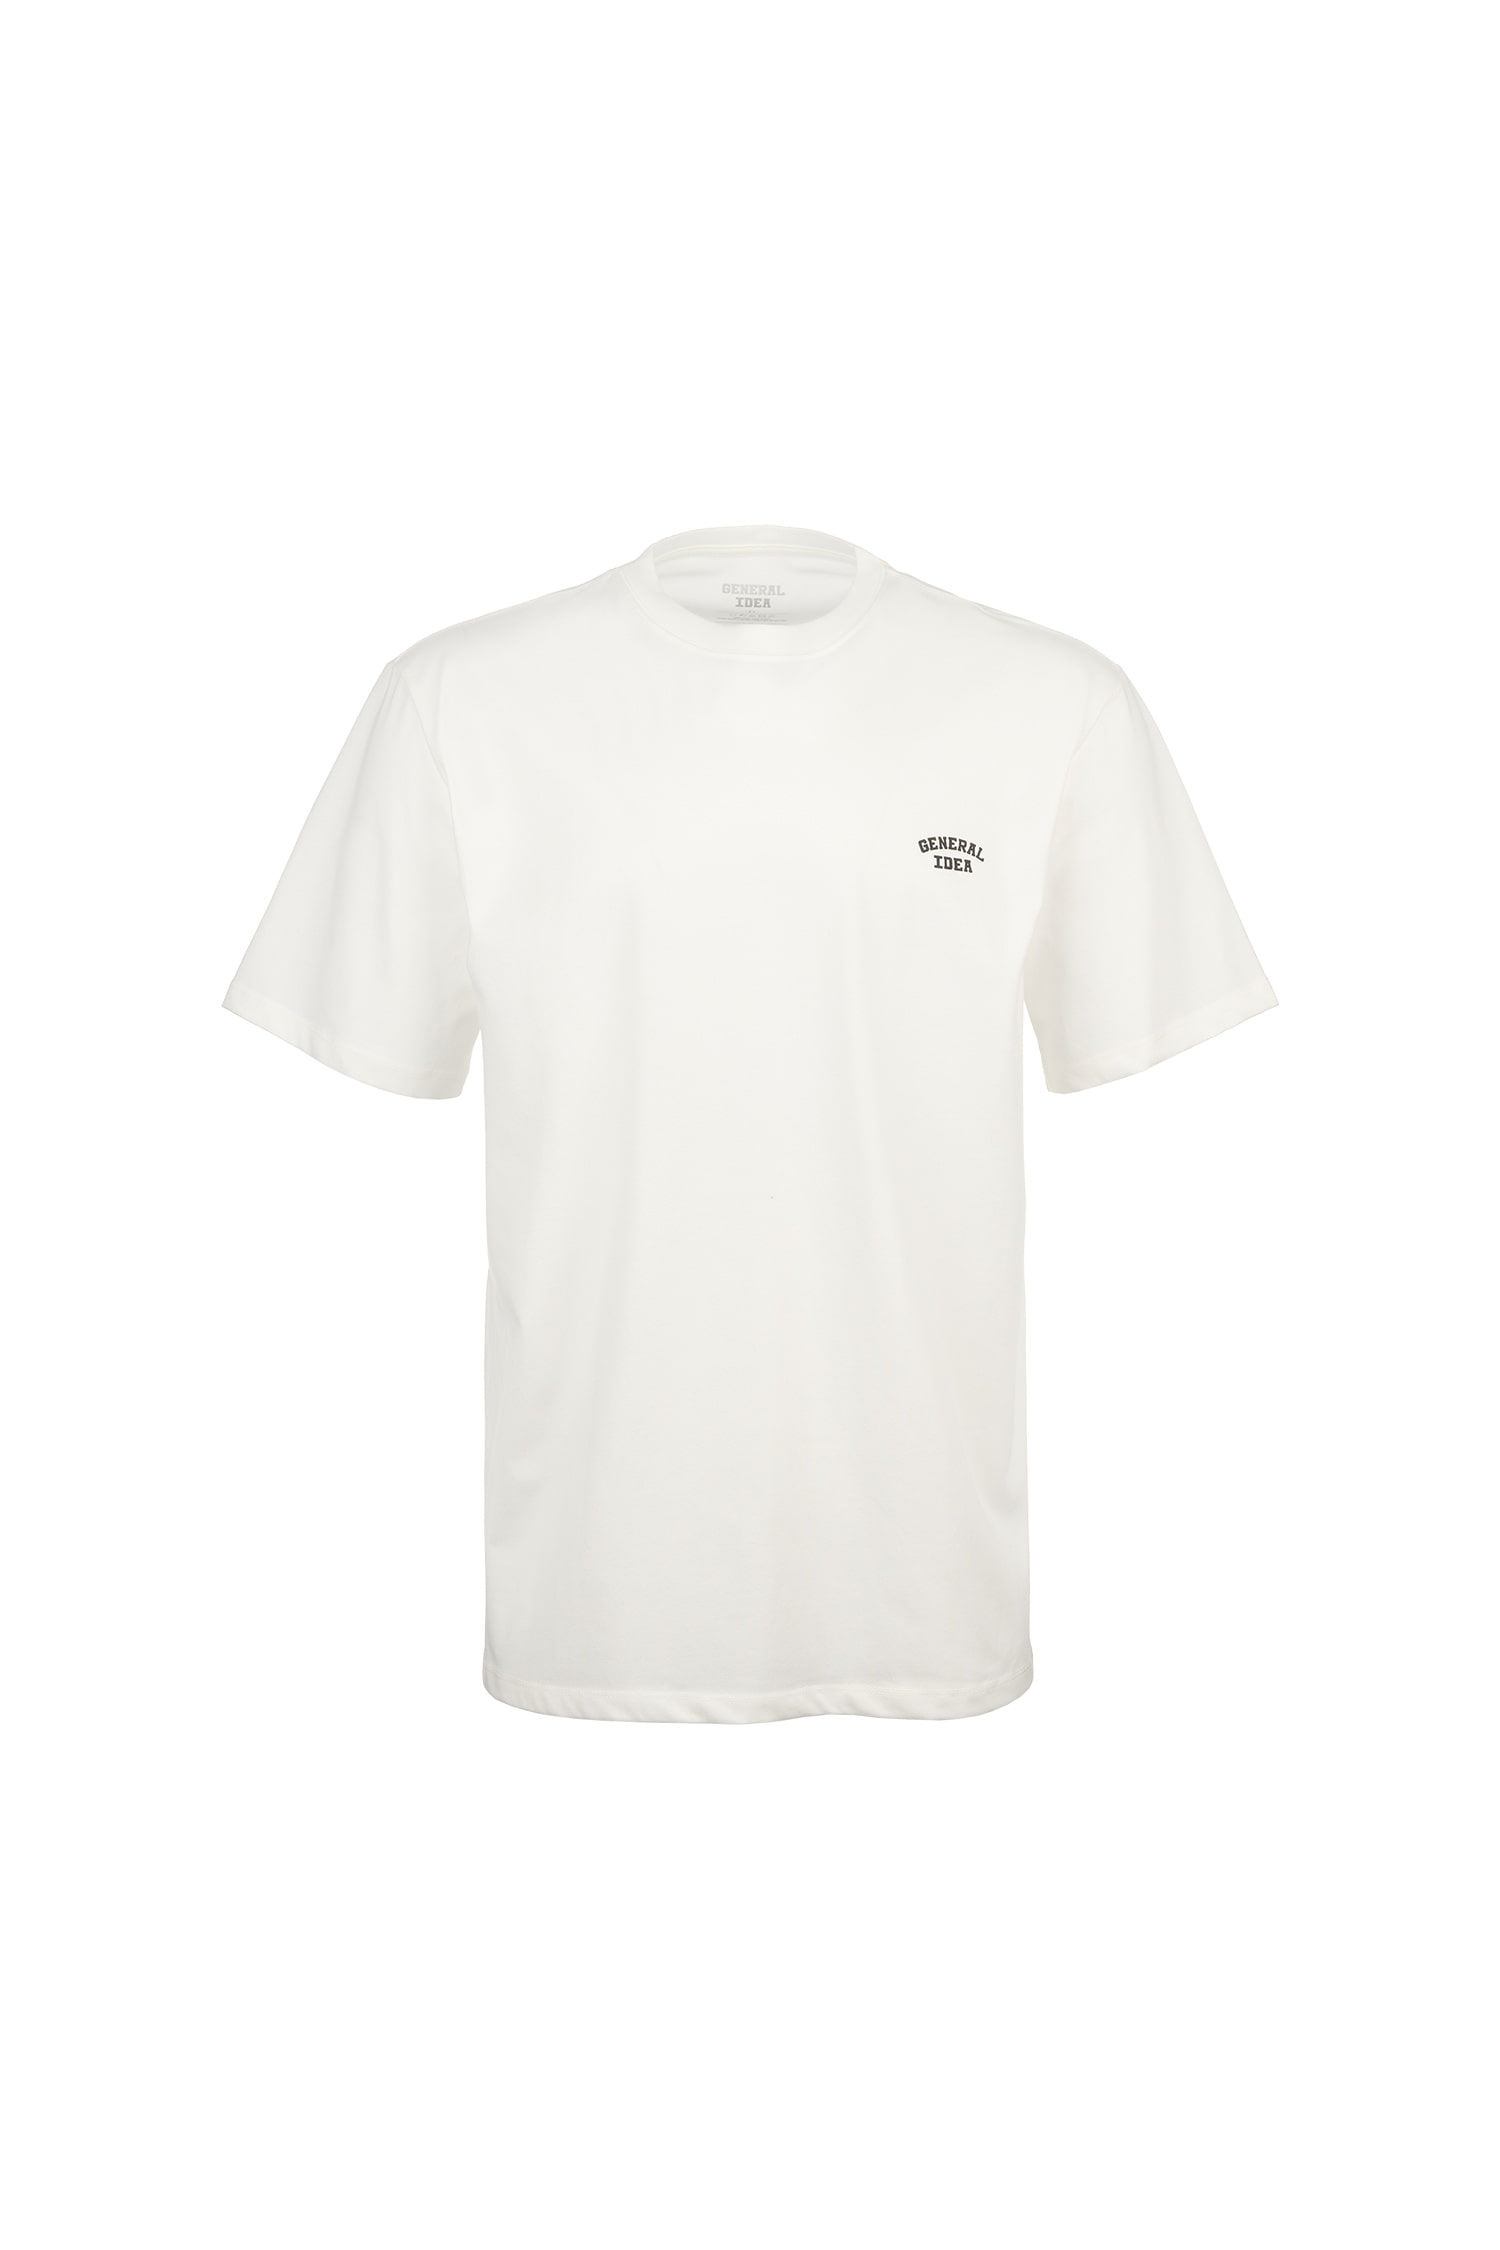 UNISEX クーリングロゴ 半袖Tシャツ [WHITE]